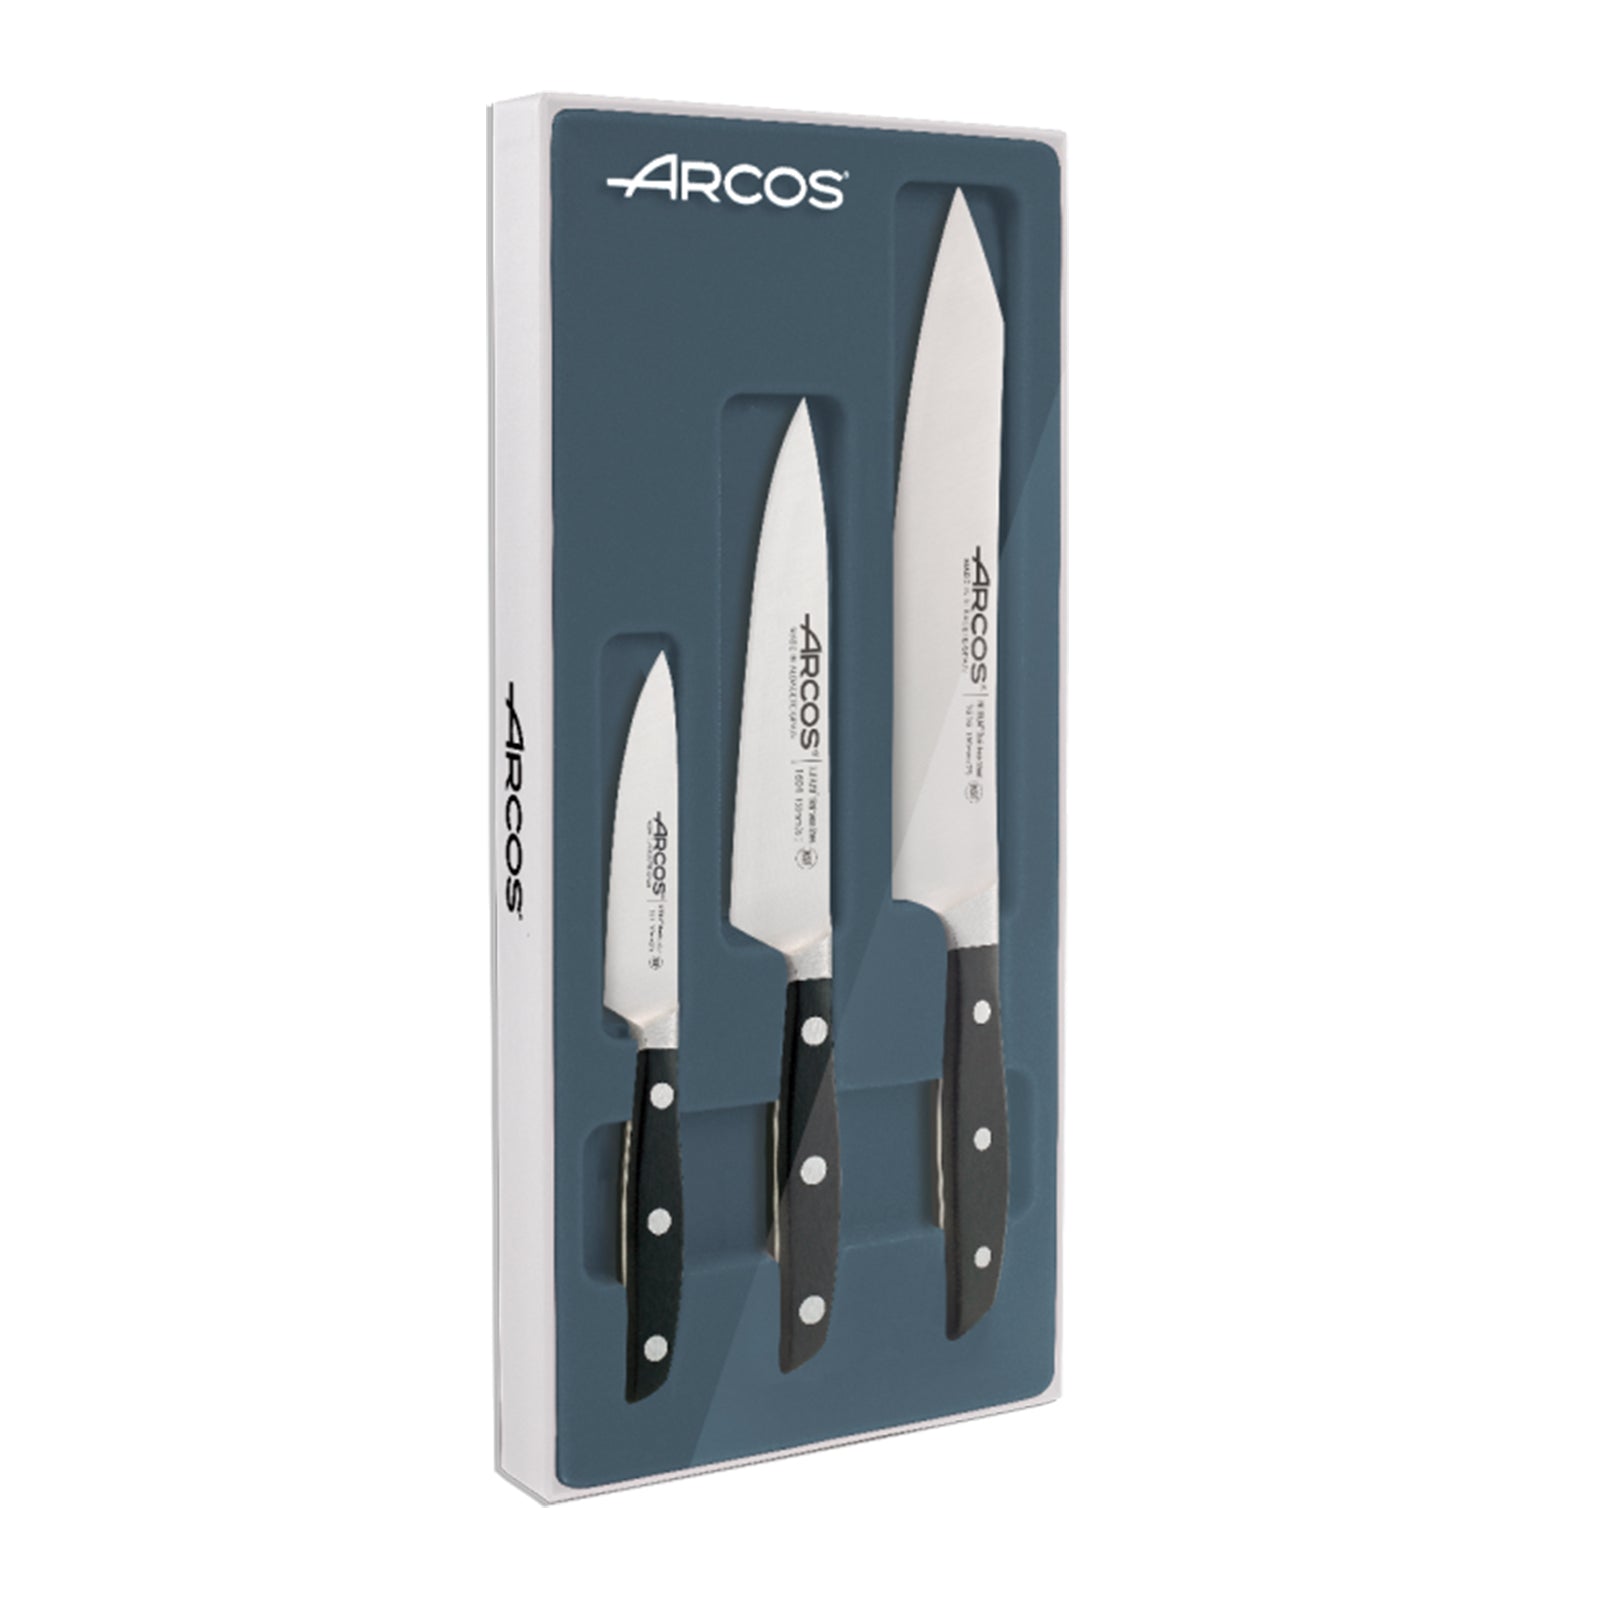 ARCOS 285800 - Juego de 2 Cuchillos de Cocina Profesionales Forjados, –  PracticDomus